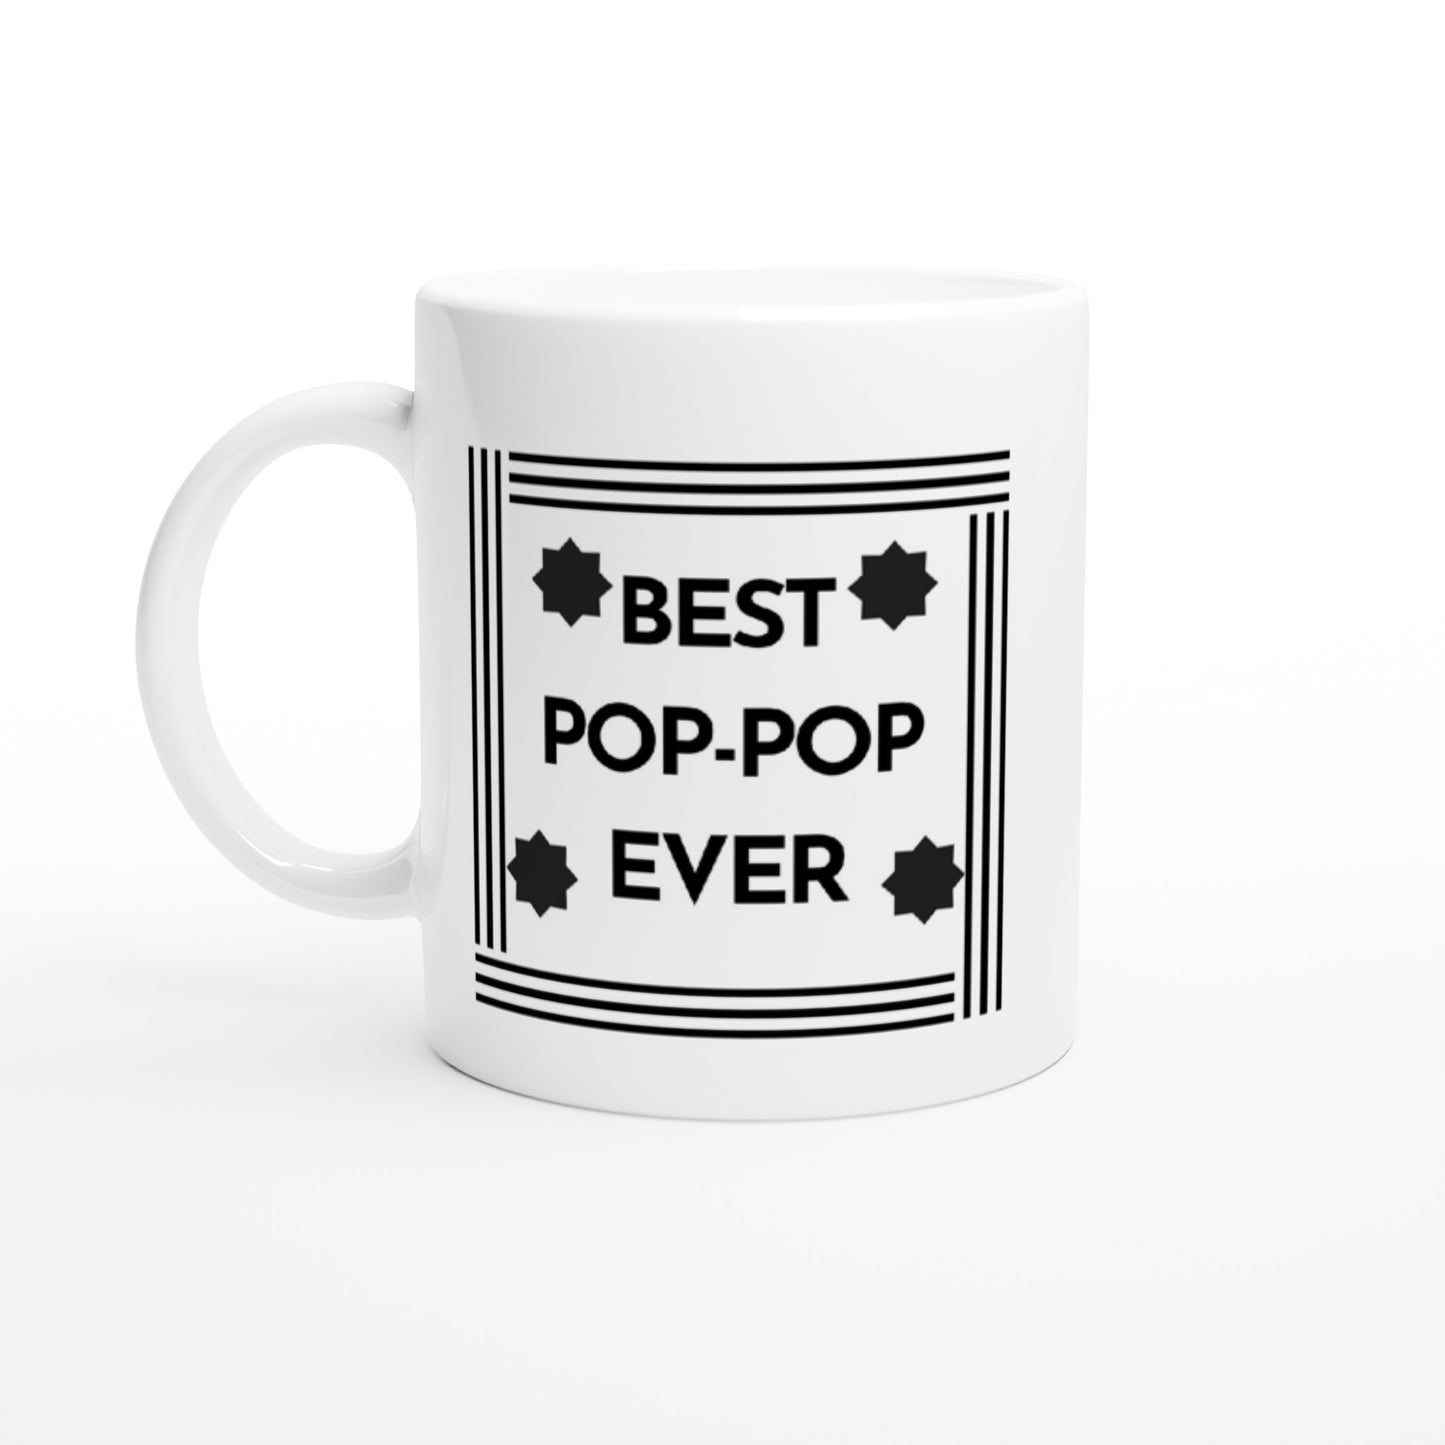 Best Pop-Pop Ever Mug